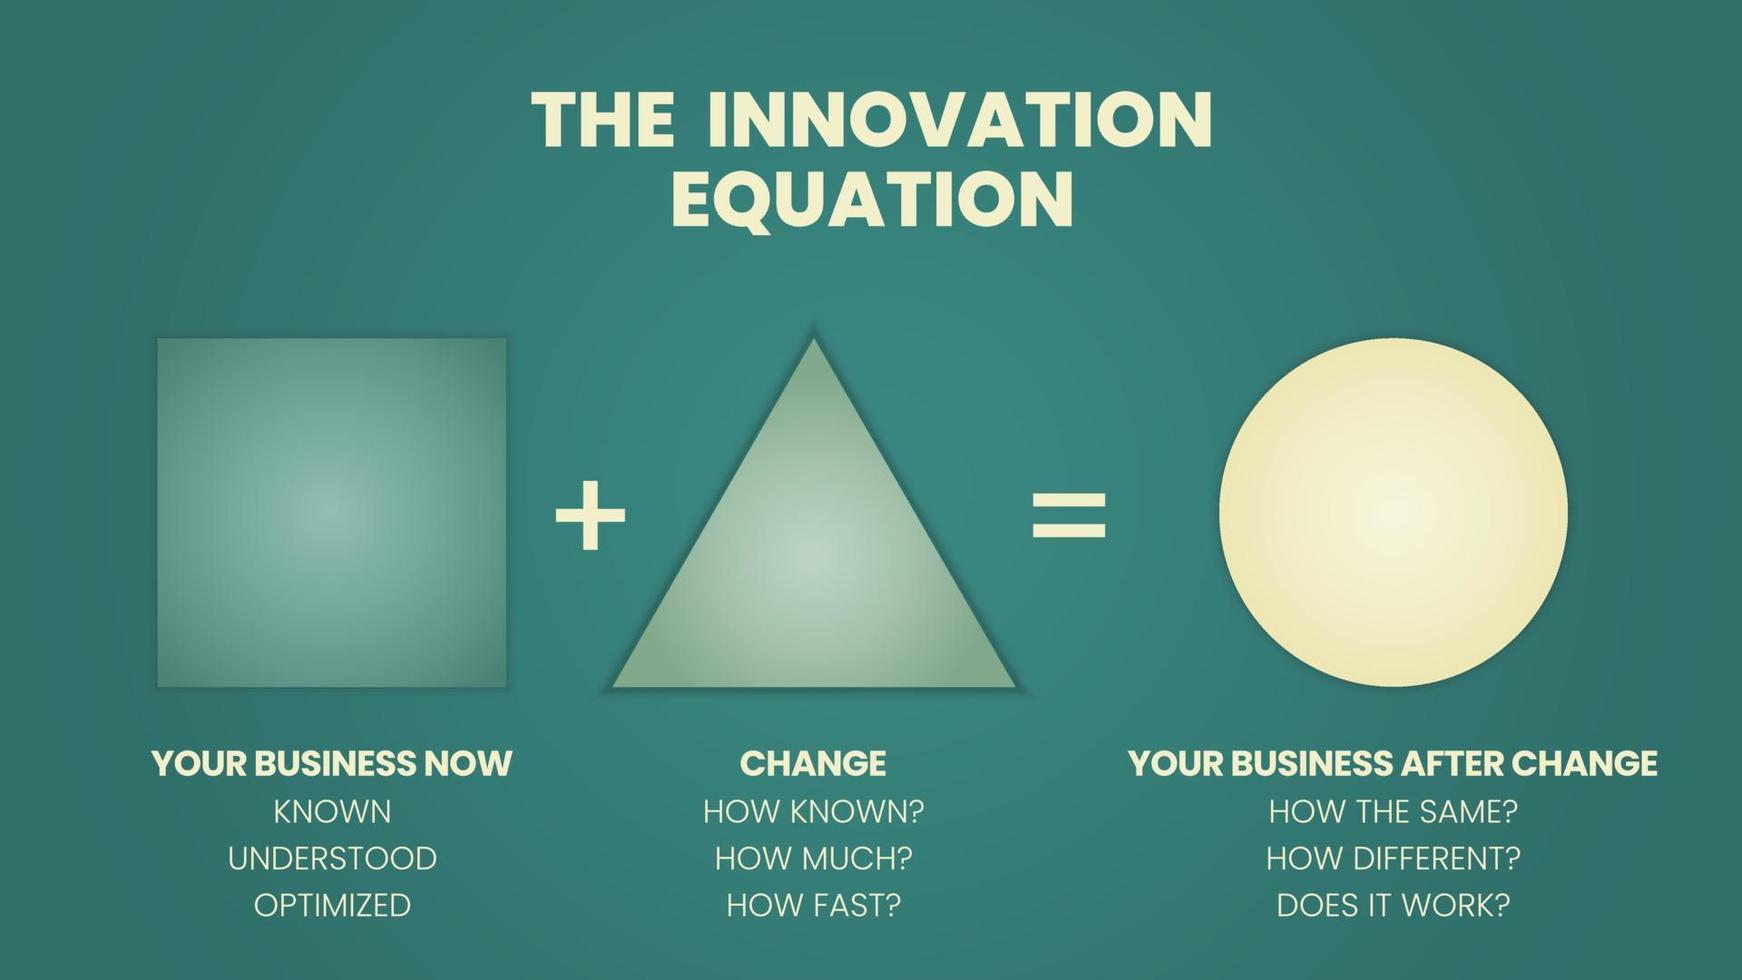 una ilustración vectorial del modelo corporativo de innovación de modelo de negocio en la ecuación de innovación tiene su negocio y cambia el nuevo negocio y suceden cosas diferentes o nuevas después de un cambio vector